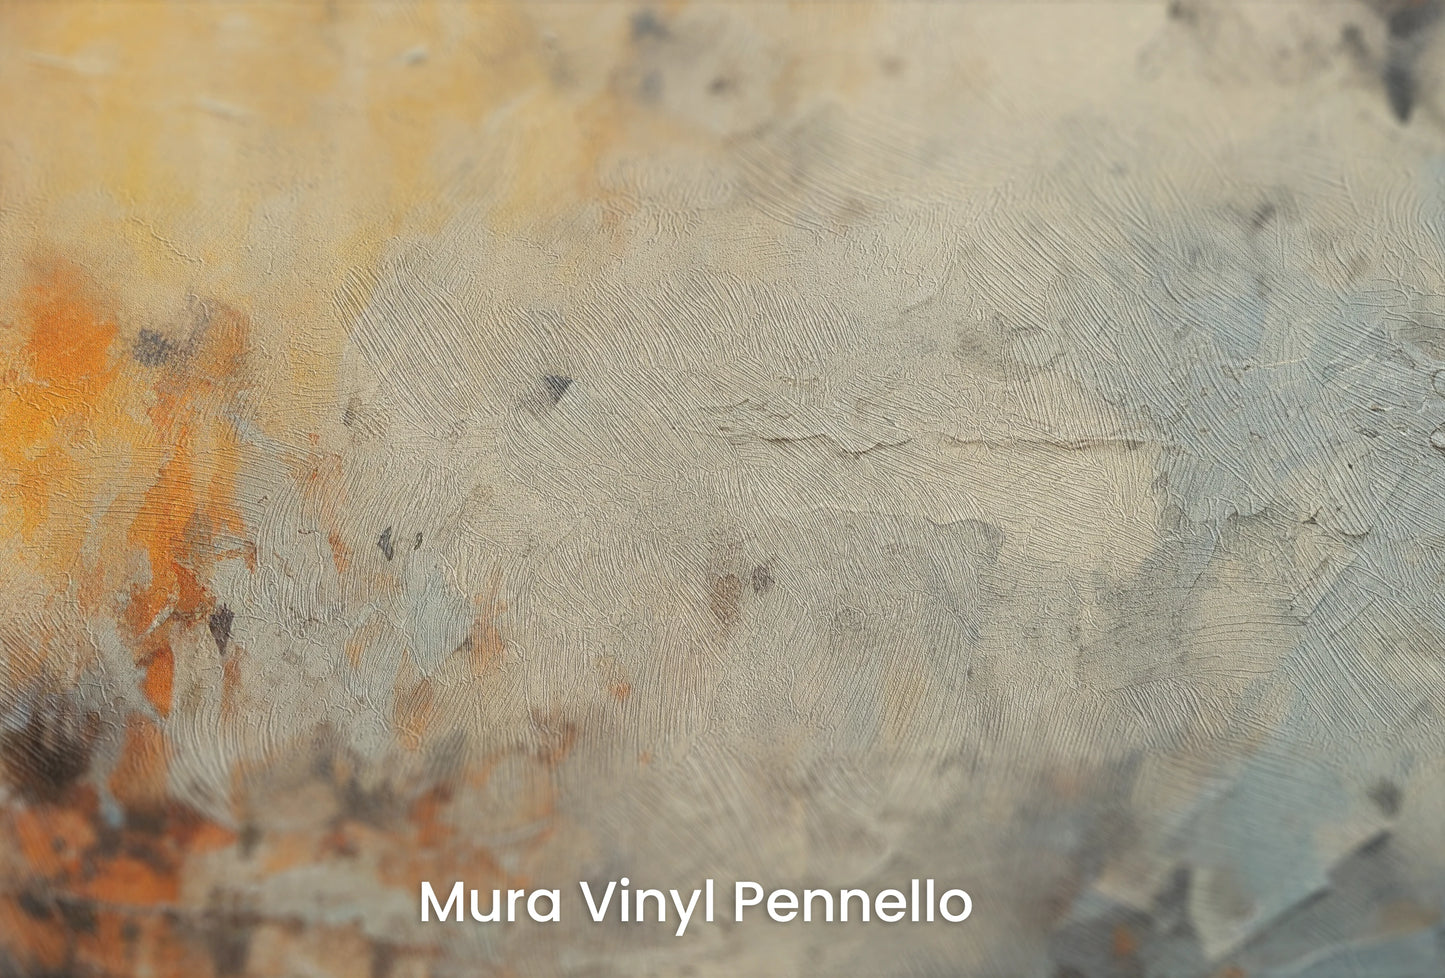 Zbliżenie na artystyczną fototapetę o nazwie Lunar Surface #3 na podłożu Mura Vinyl Pennello - faktura pociągnięć pędzla malarskiego.